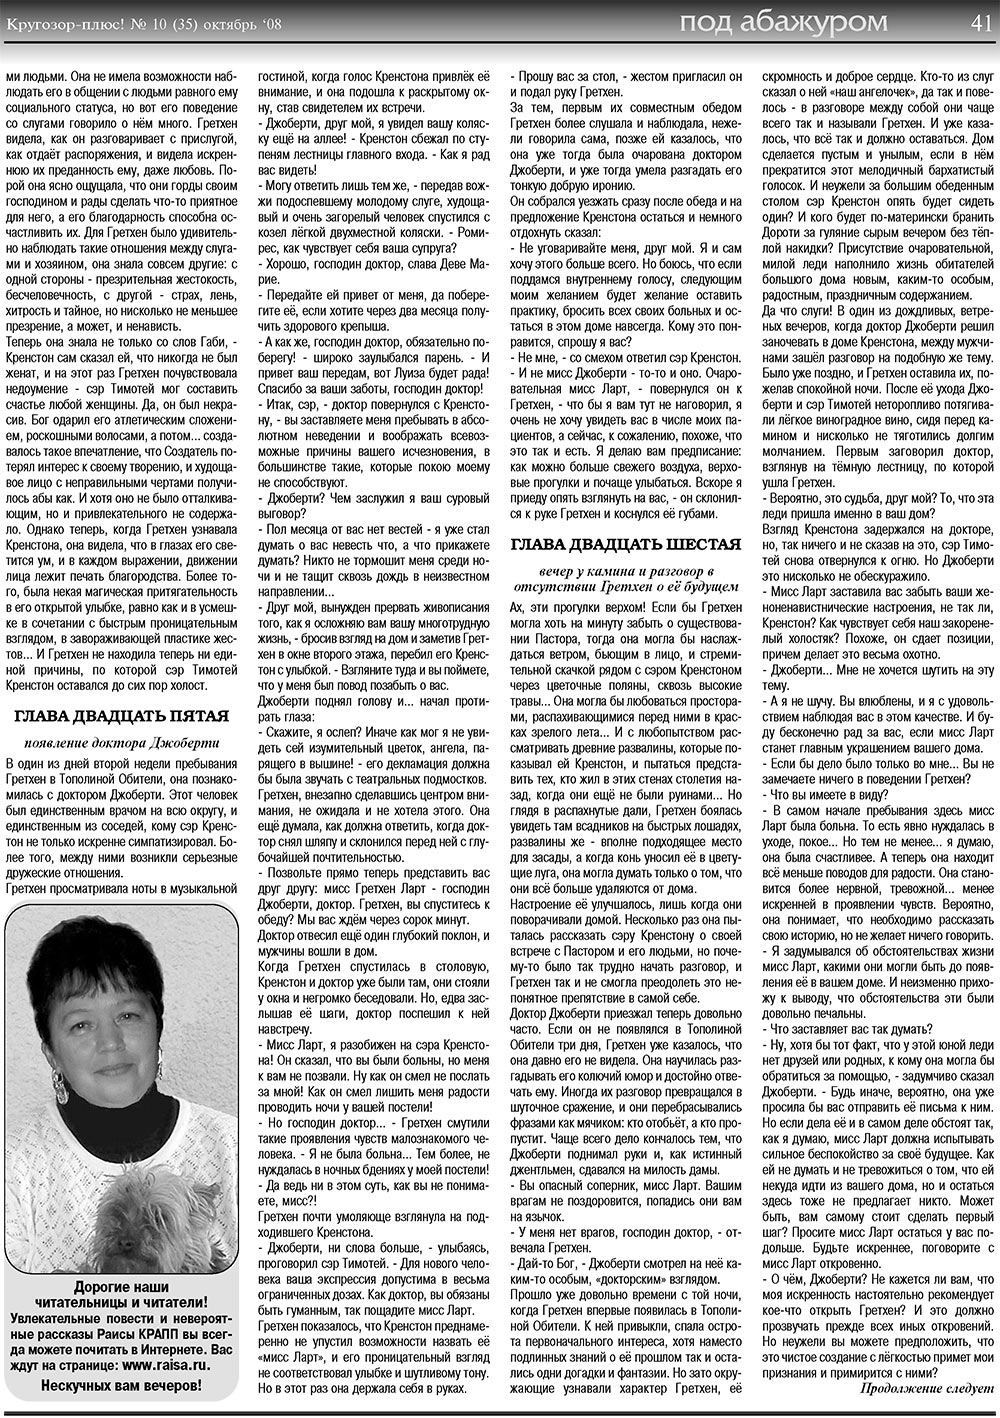 Кругозор плюс!, газета. 2008 №10 стр.41